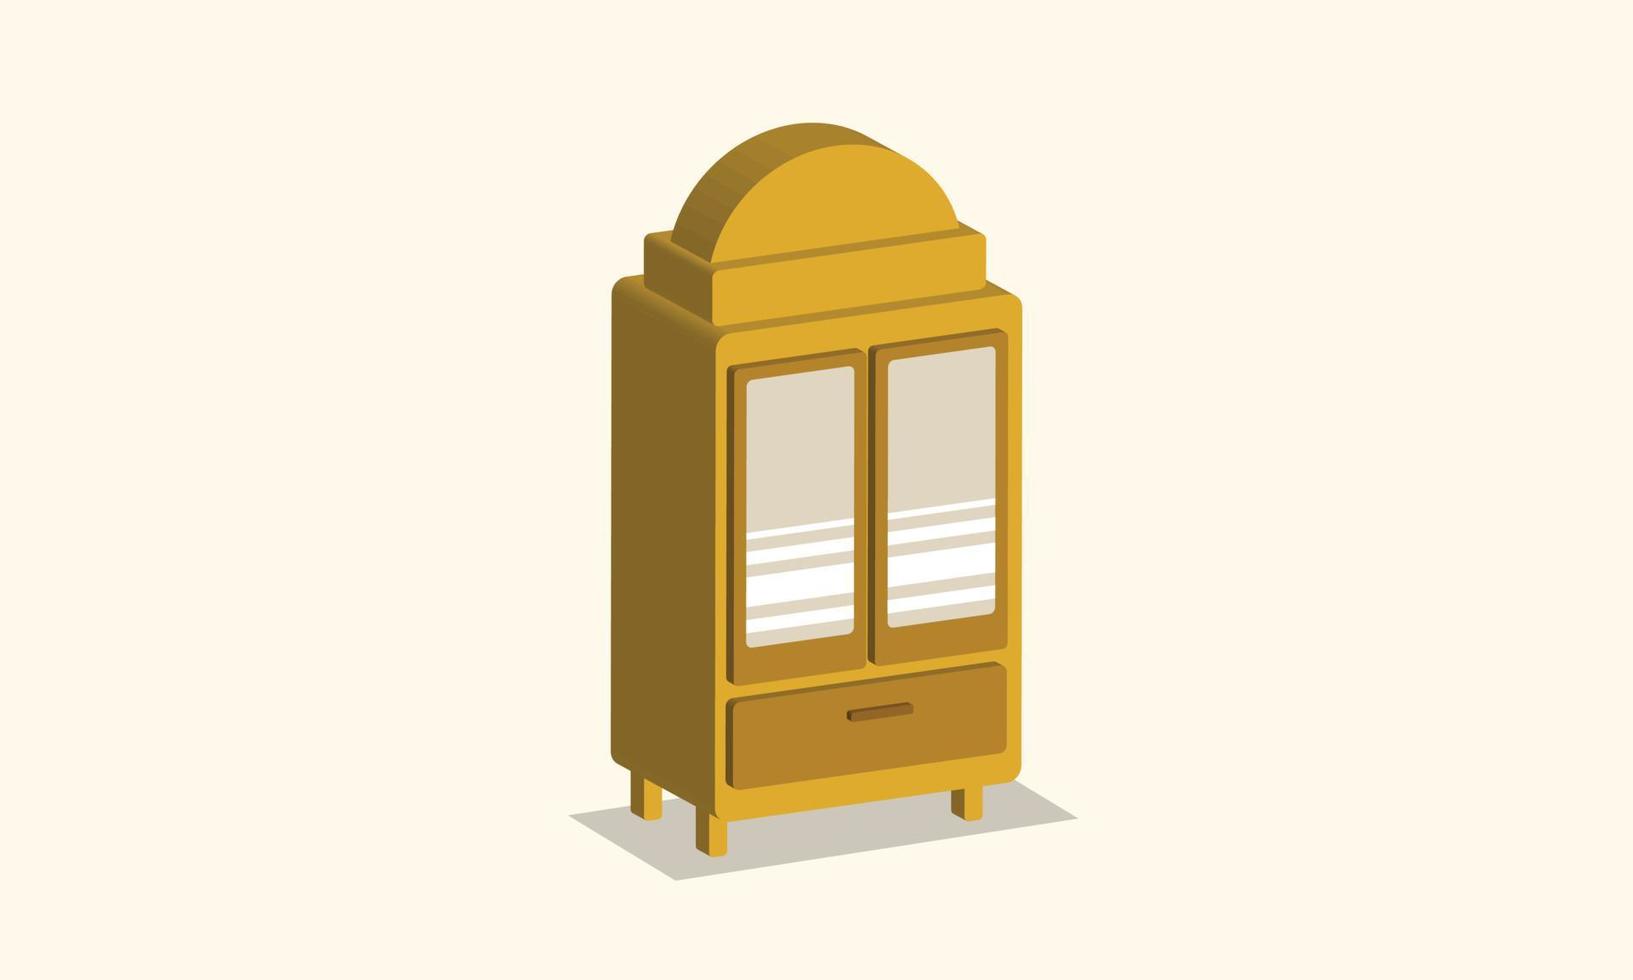 armario de madera isométrica con ilustración de vector plano de diseño de espejo. diseño gráfico de armario o armario de isometría para diseño relacionado con muebles.